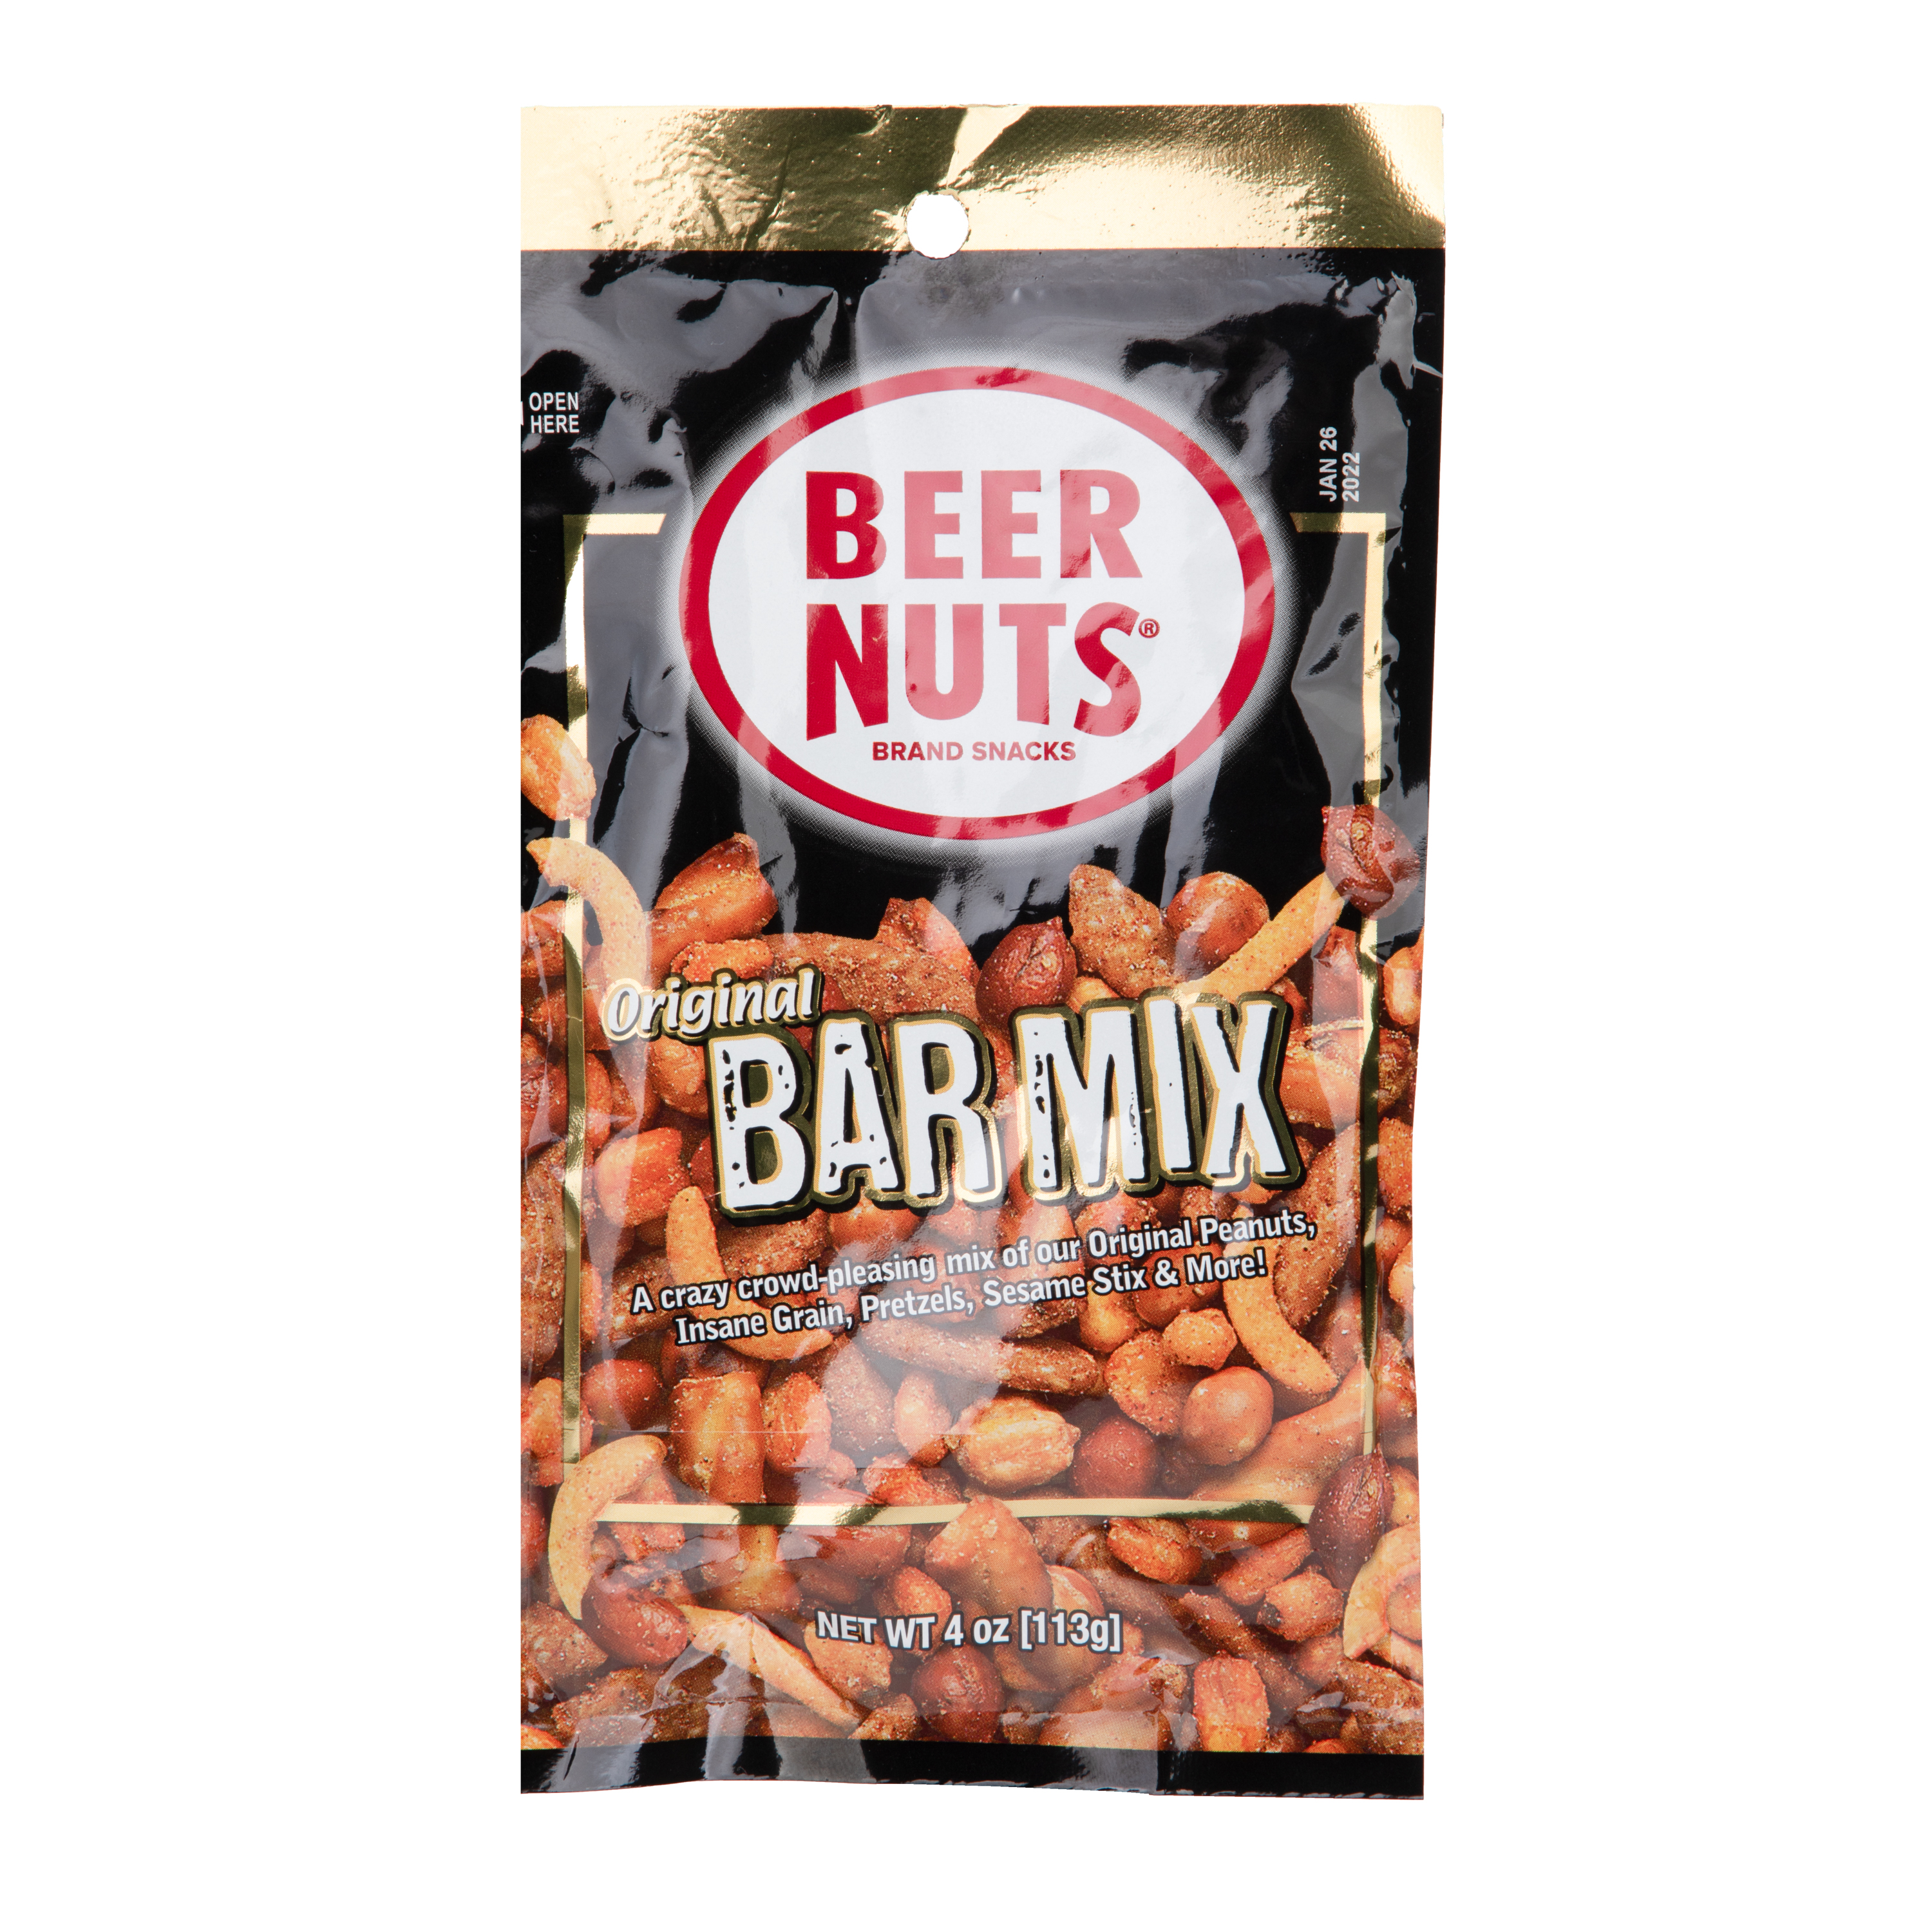 Beer nuts original bar mix 4oz